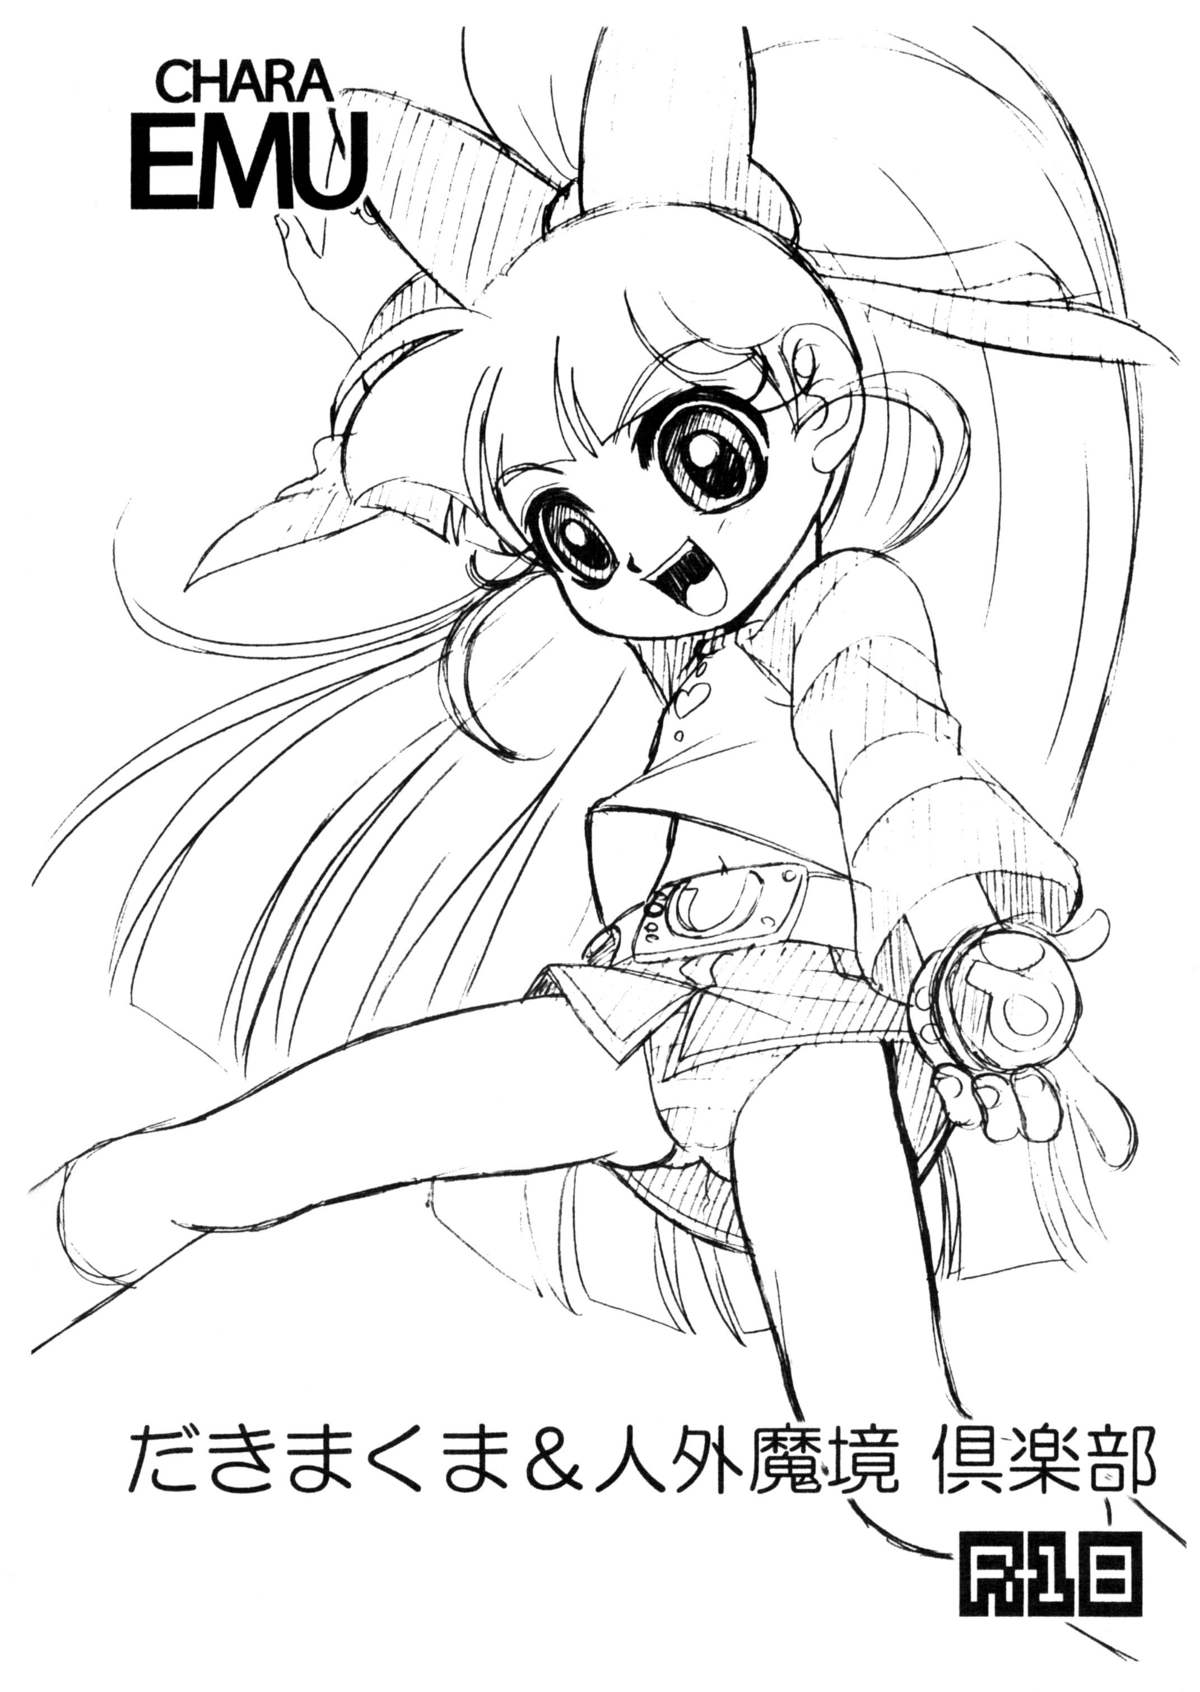 (Puniket 14) [Dakimakuma, Jingai Makyou Club (Wing Bird)] CHARA EMU W☆BC 003 De masi ta! Power Puff Girls Z 002 (Demashita Power Puff Girls Z) page 10 full